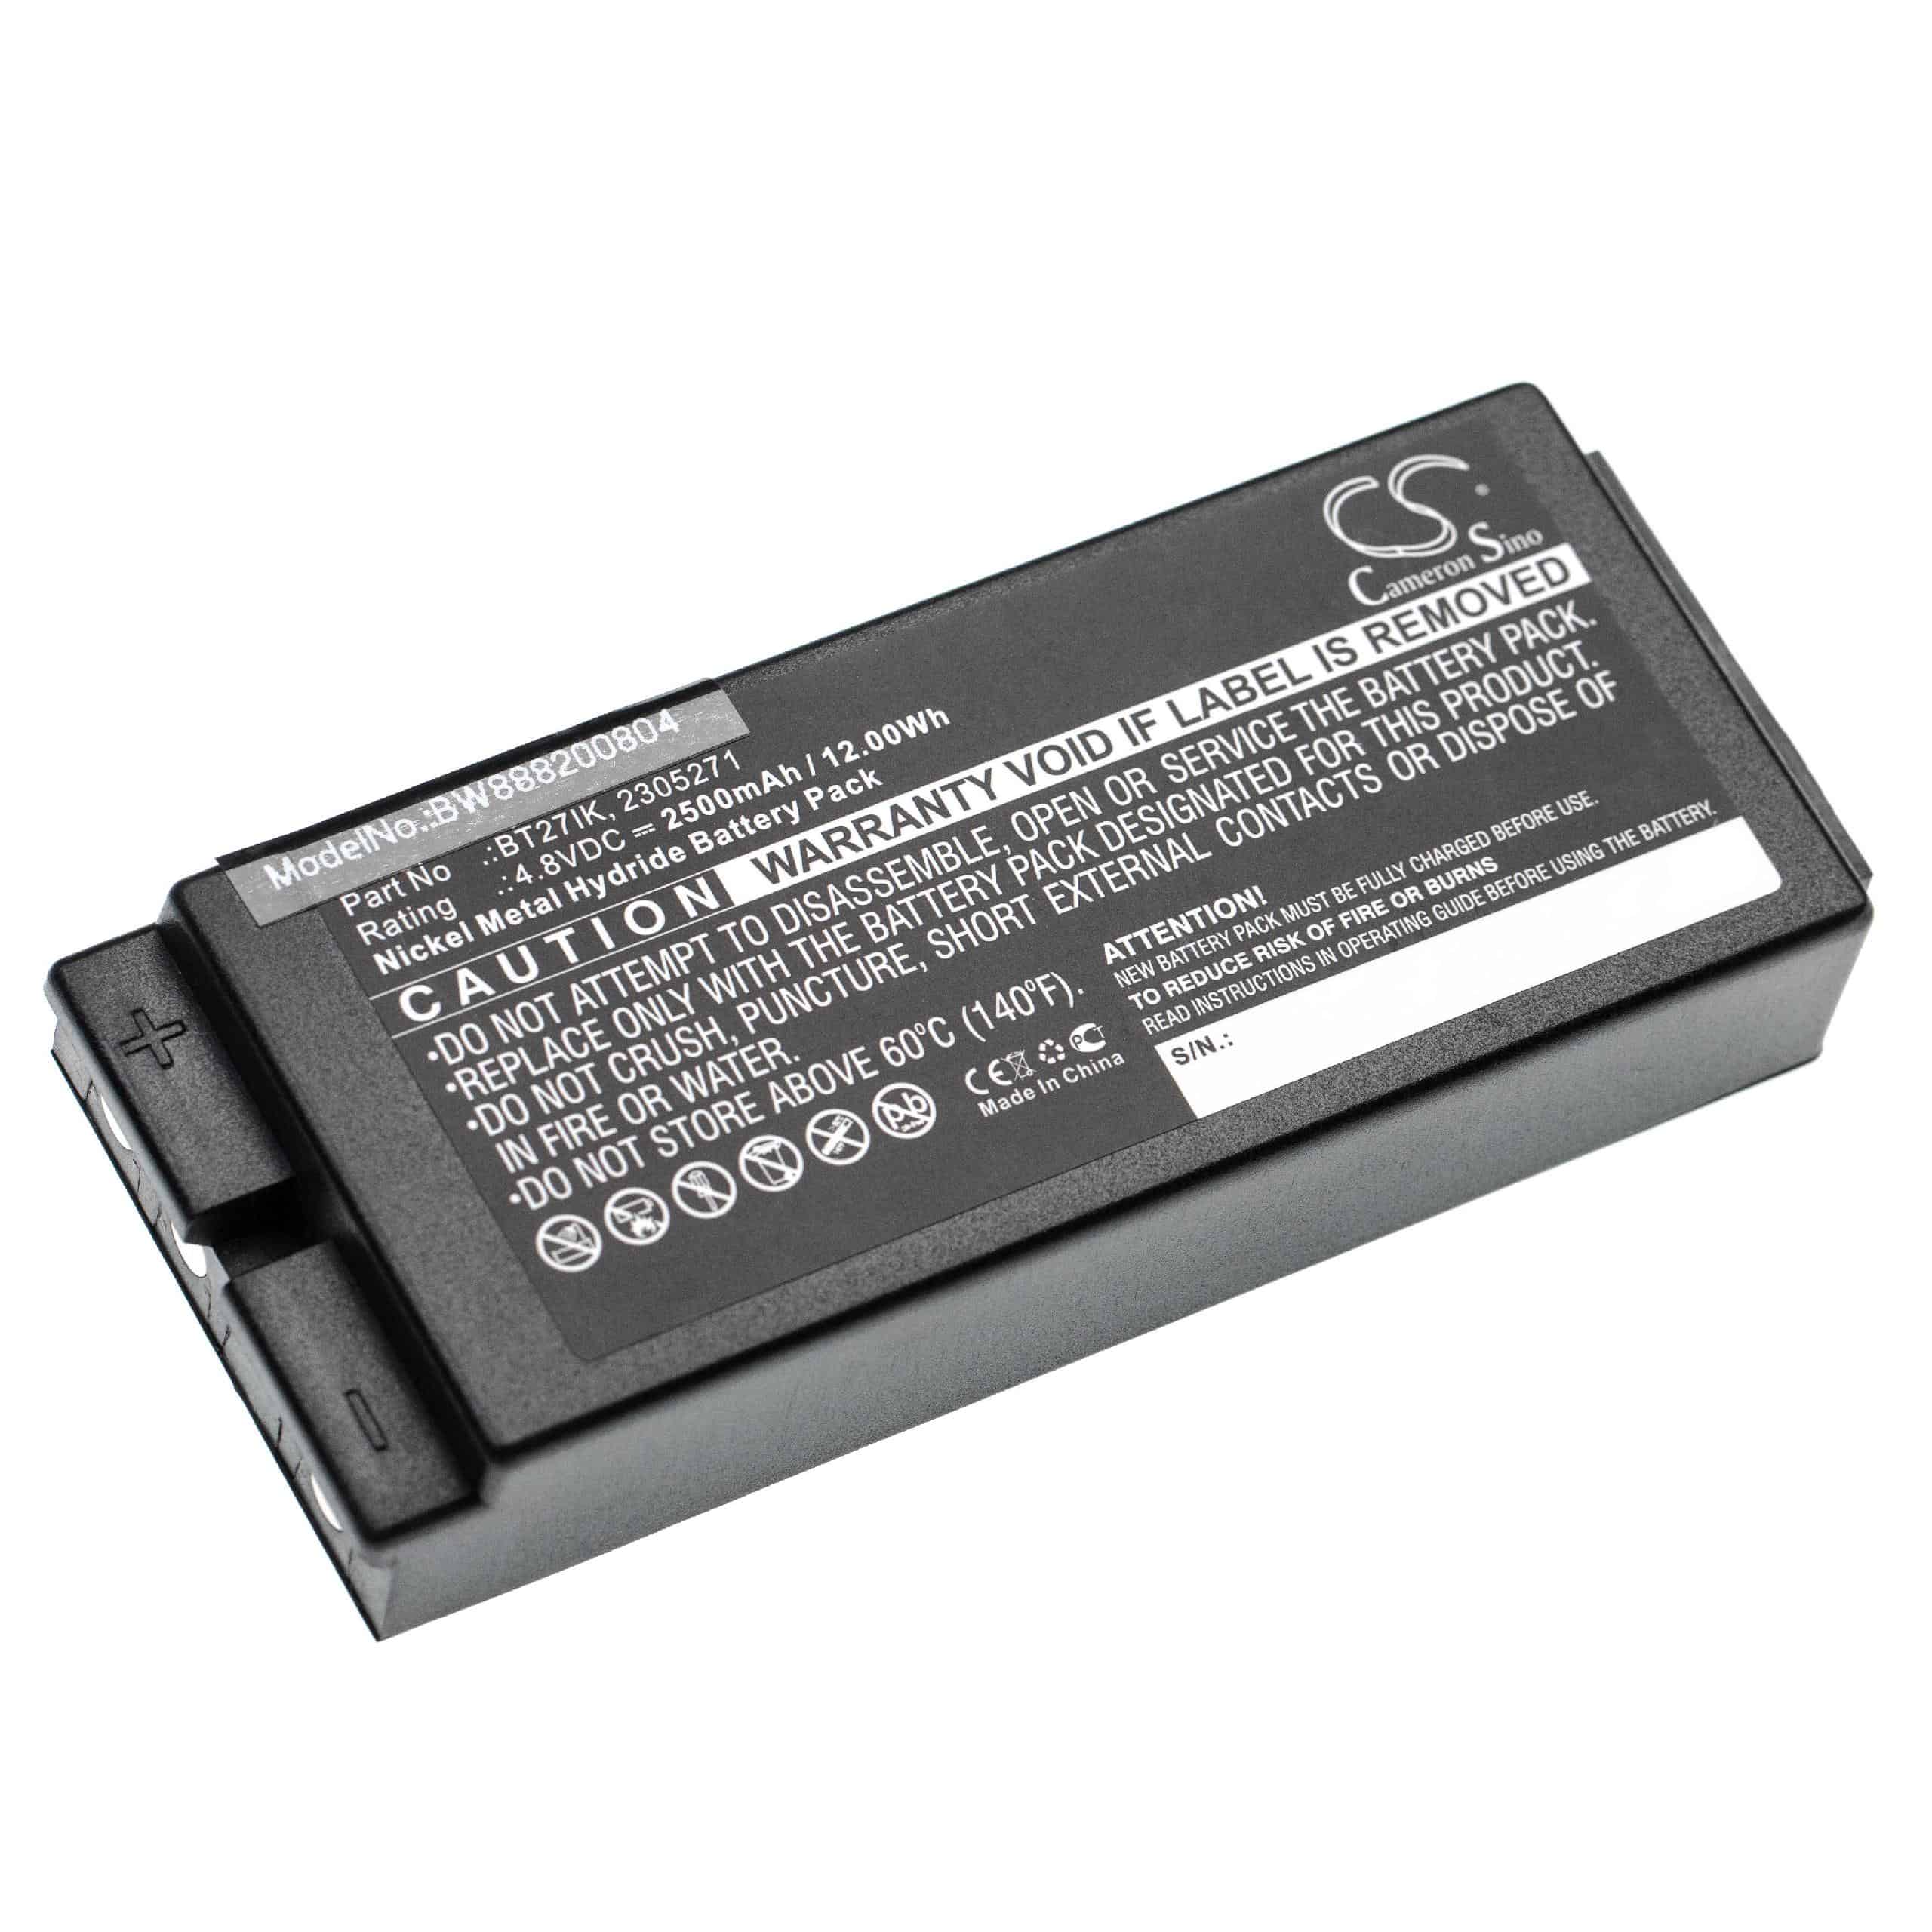 Batterie remplace Danfoss 2305271, BT24IK pour télécomande industrielle - 2500mAh 4,8V NiMH